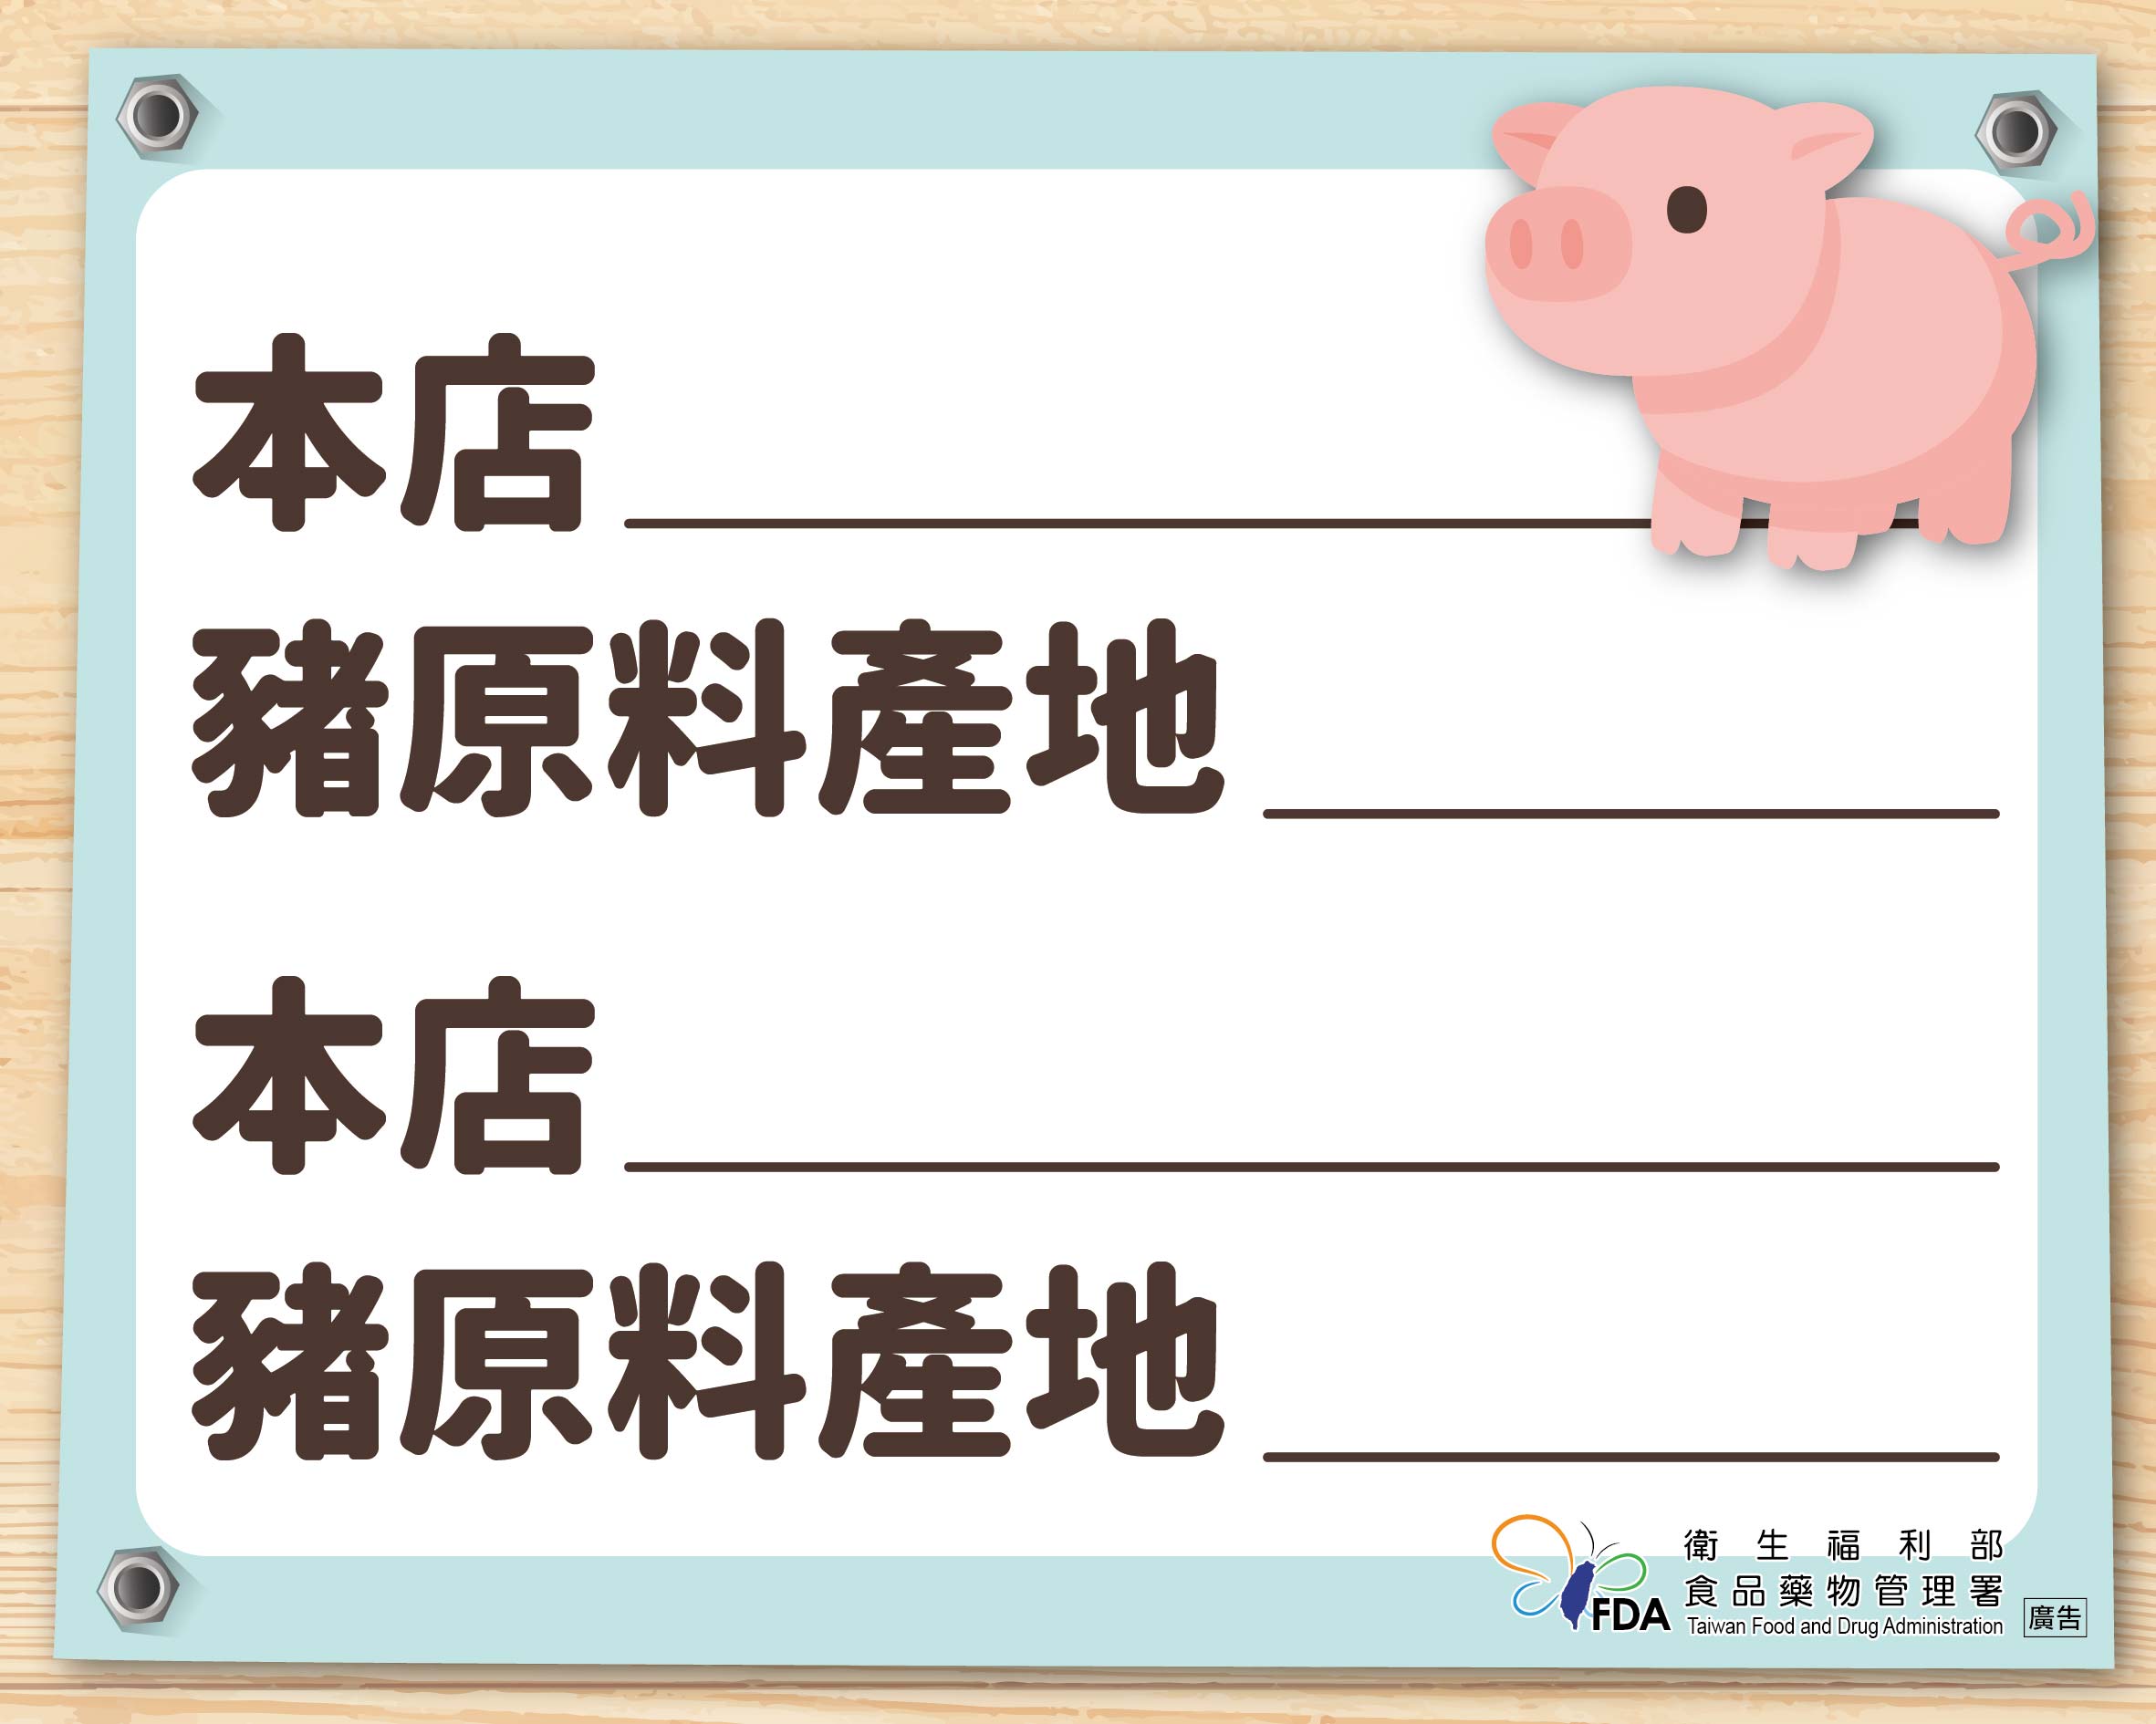 豬肉原料原產地標示規定宣導-標籤9(新)